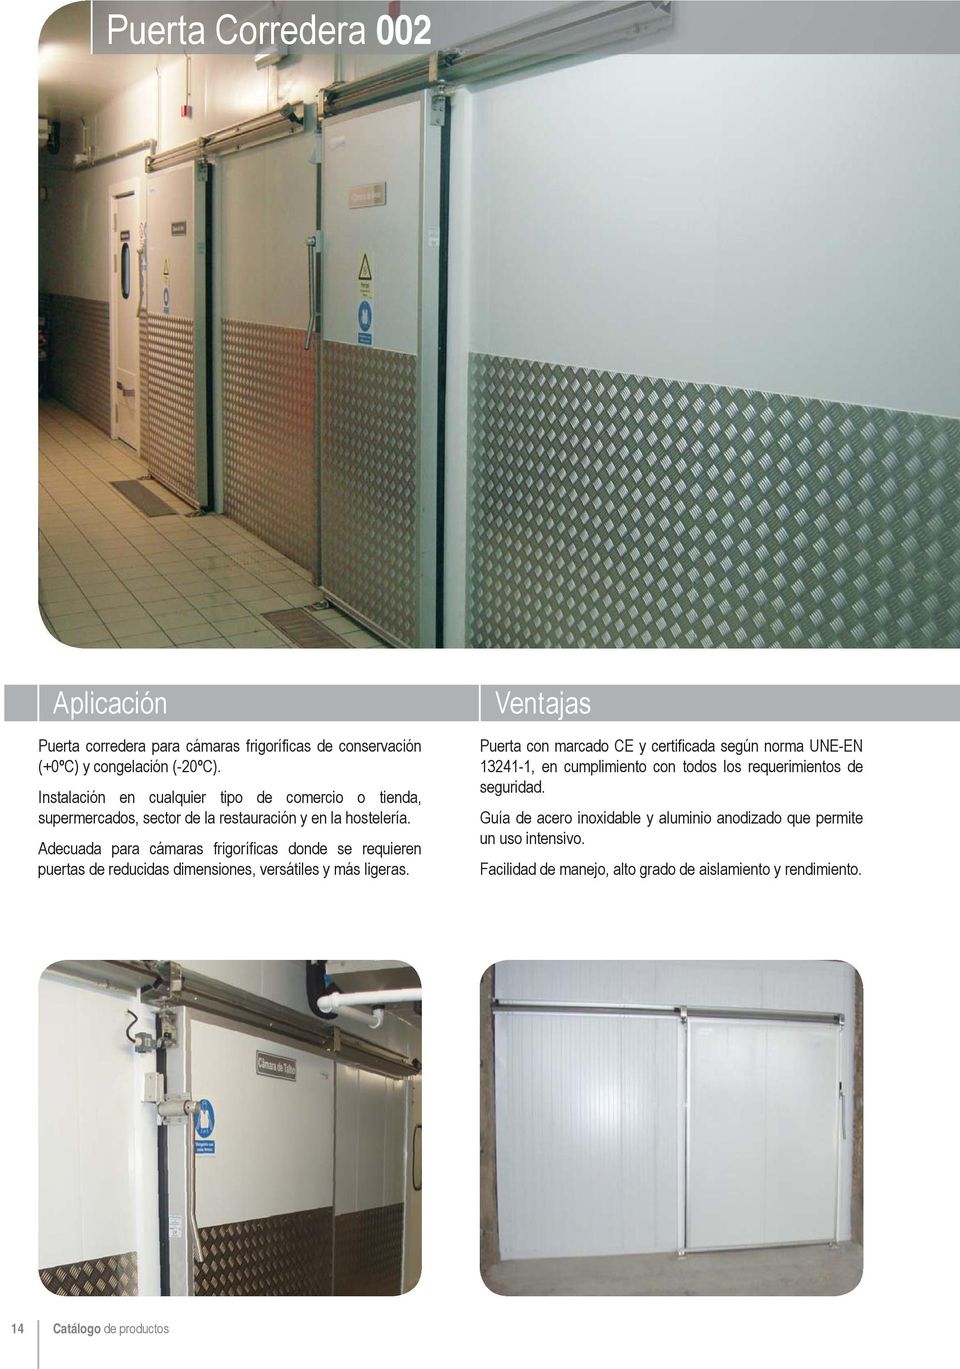 Adecuada para cámaras frigoríficas donde se requieren puertas de reducidas dimensiones, versátiles y más ligeras.